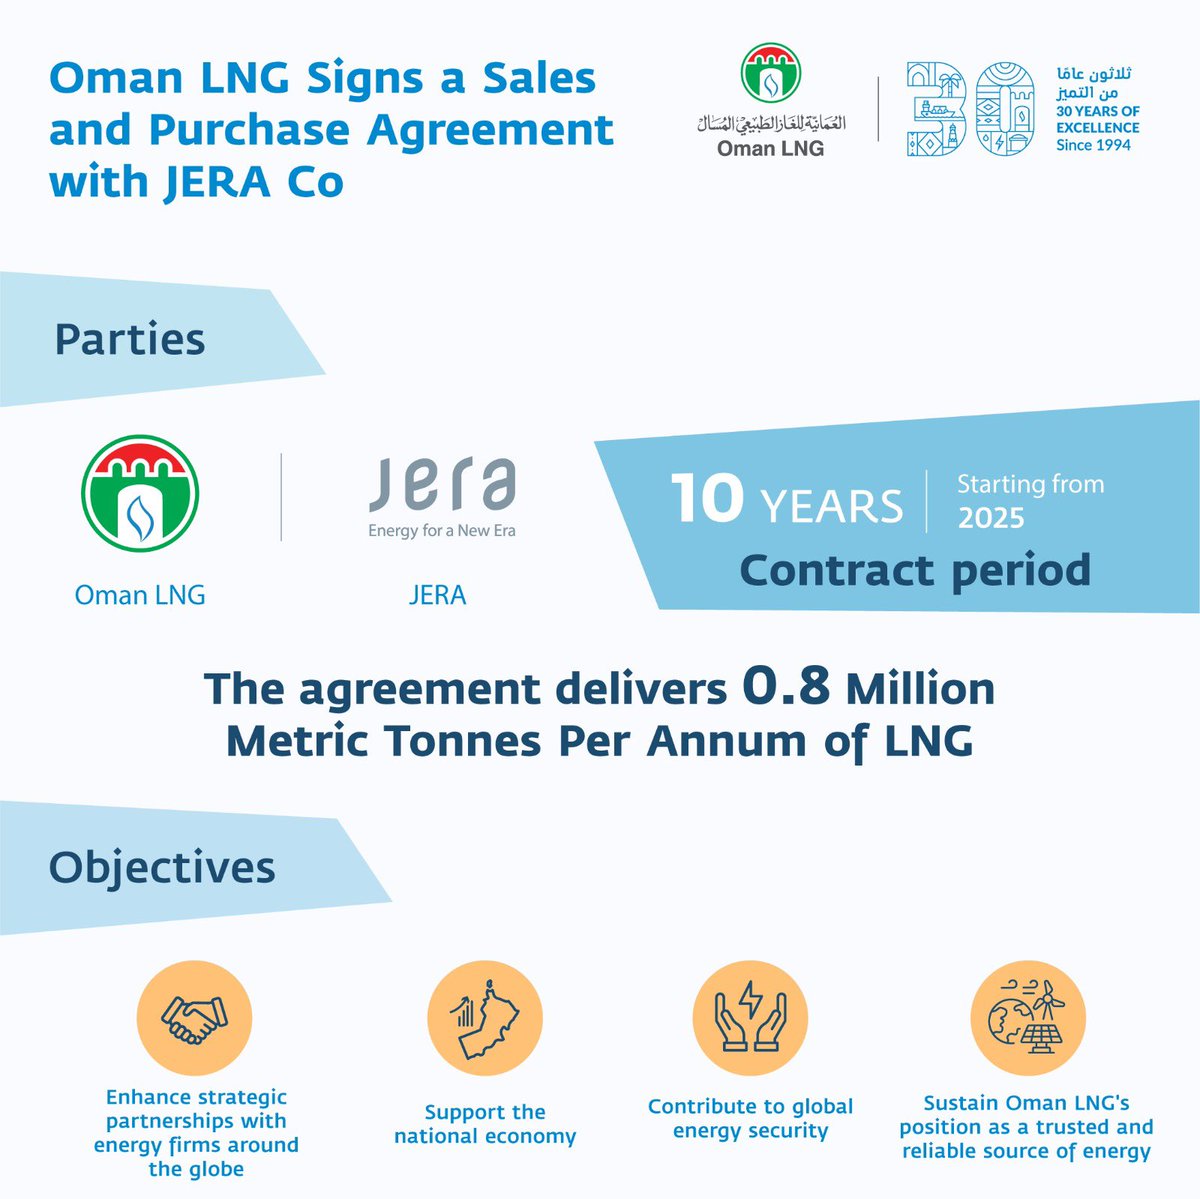 استكمالا لسعينا الحثيث لنكون الأفضل في كل ما نقوم به ، وقعنا اتفاقية بيع وشراء مع شركة جيرا اليابانية لتصدير ما يصل الى إجمالي 0.8 مليون طن متري سنوياً من الغاز الطبيعي المسال ، تأتي هذه الخطوة لتعزز من مكانة الشركة كمورد معتمد للطاقة عالمياً ولدعم الناتج المحلي Oman LNG has…